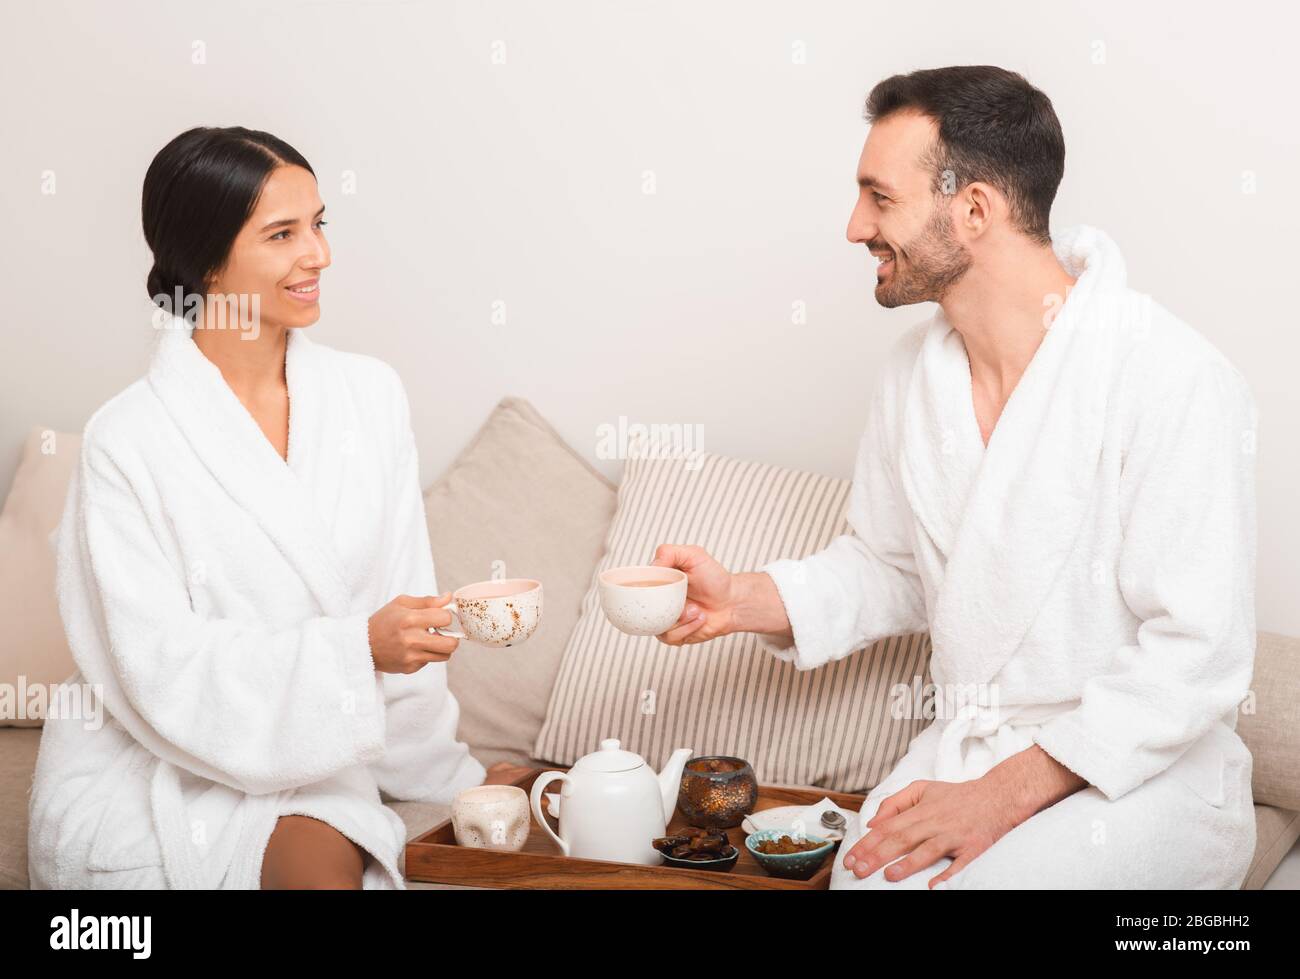 L'homme et une femme boivent du thé de bien-être dans un spa slon. Couple aime se détendre au centre de villégiature et au spa Banque D'Images